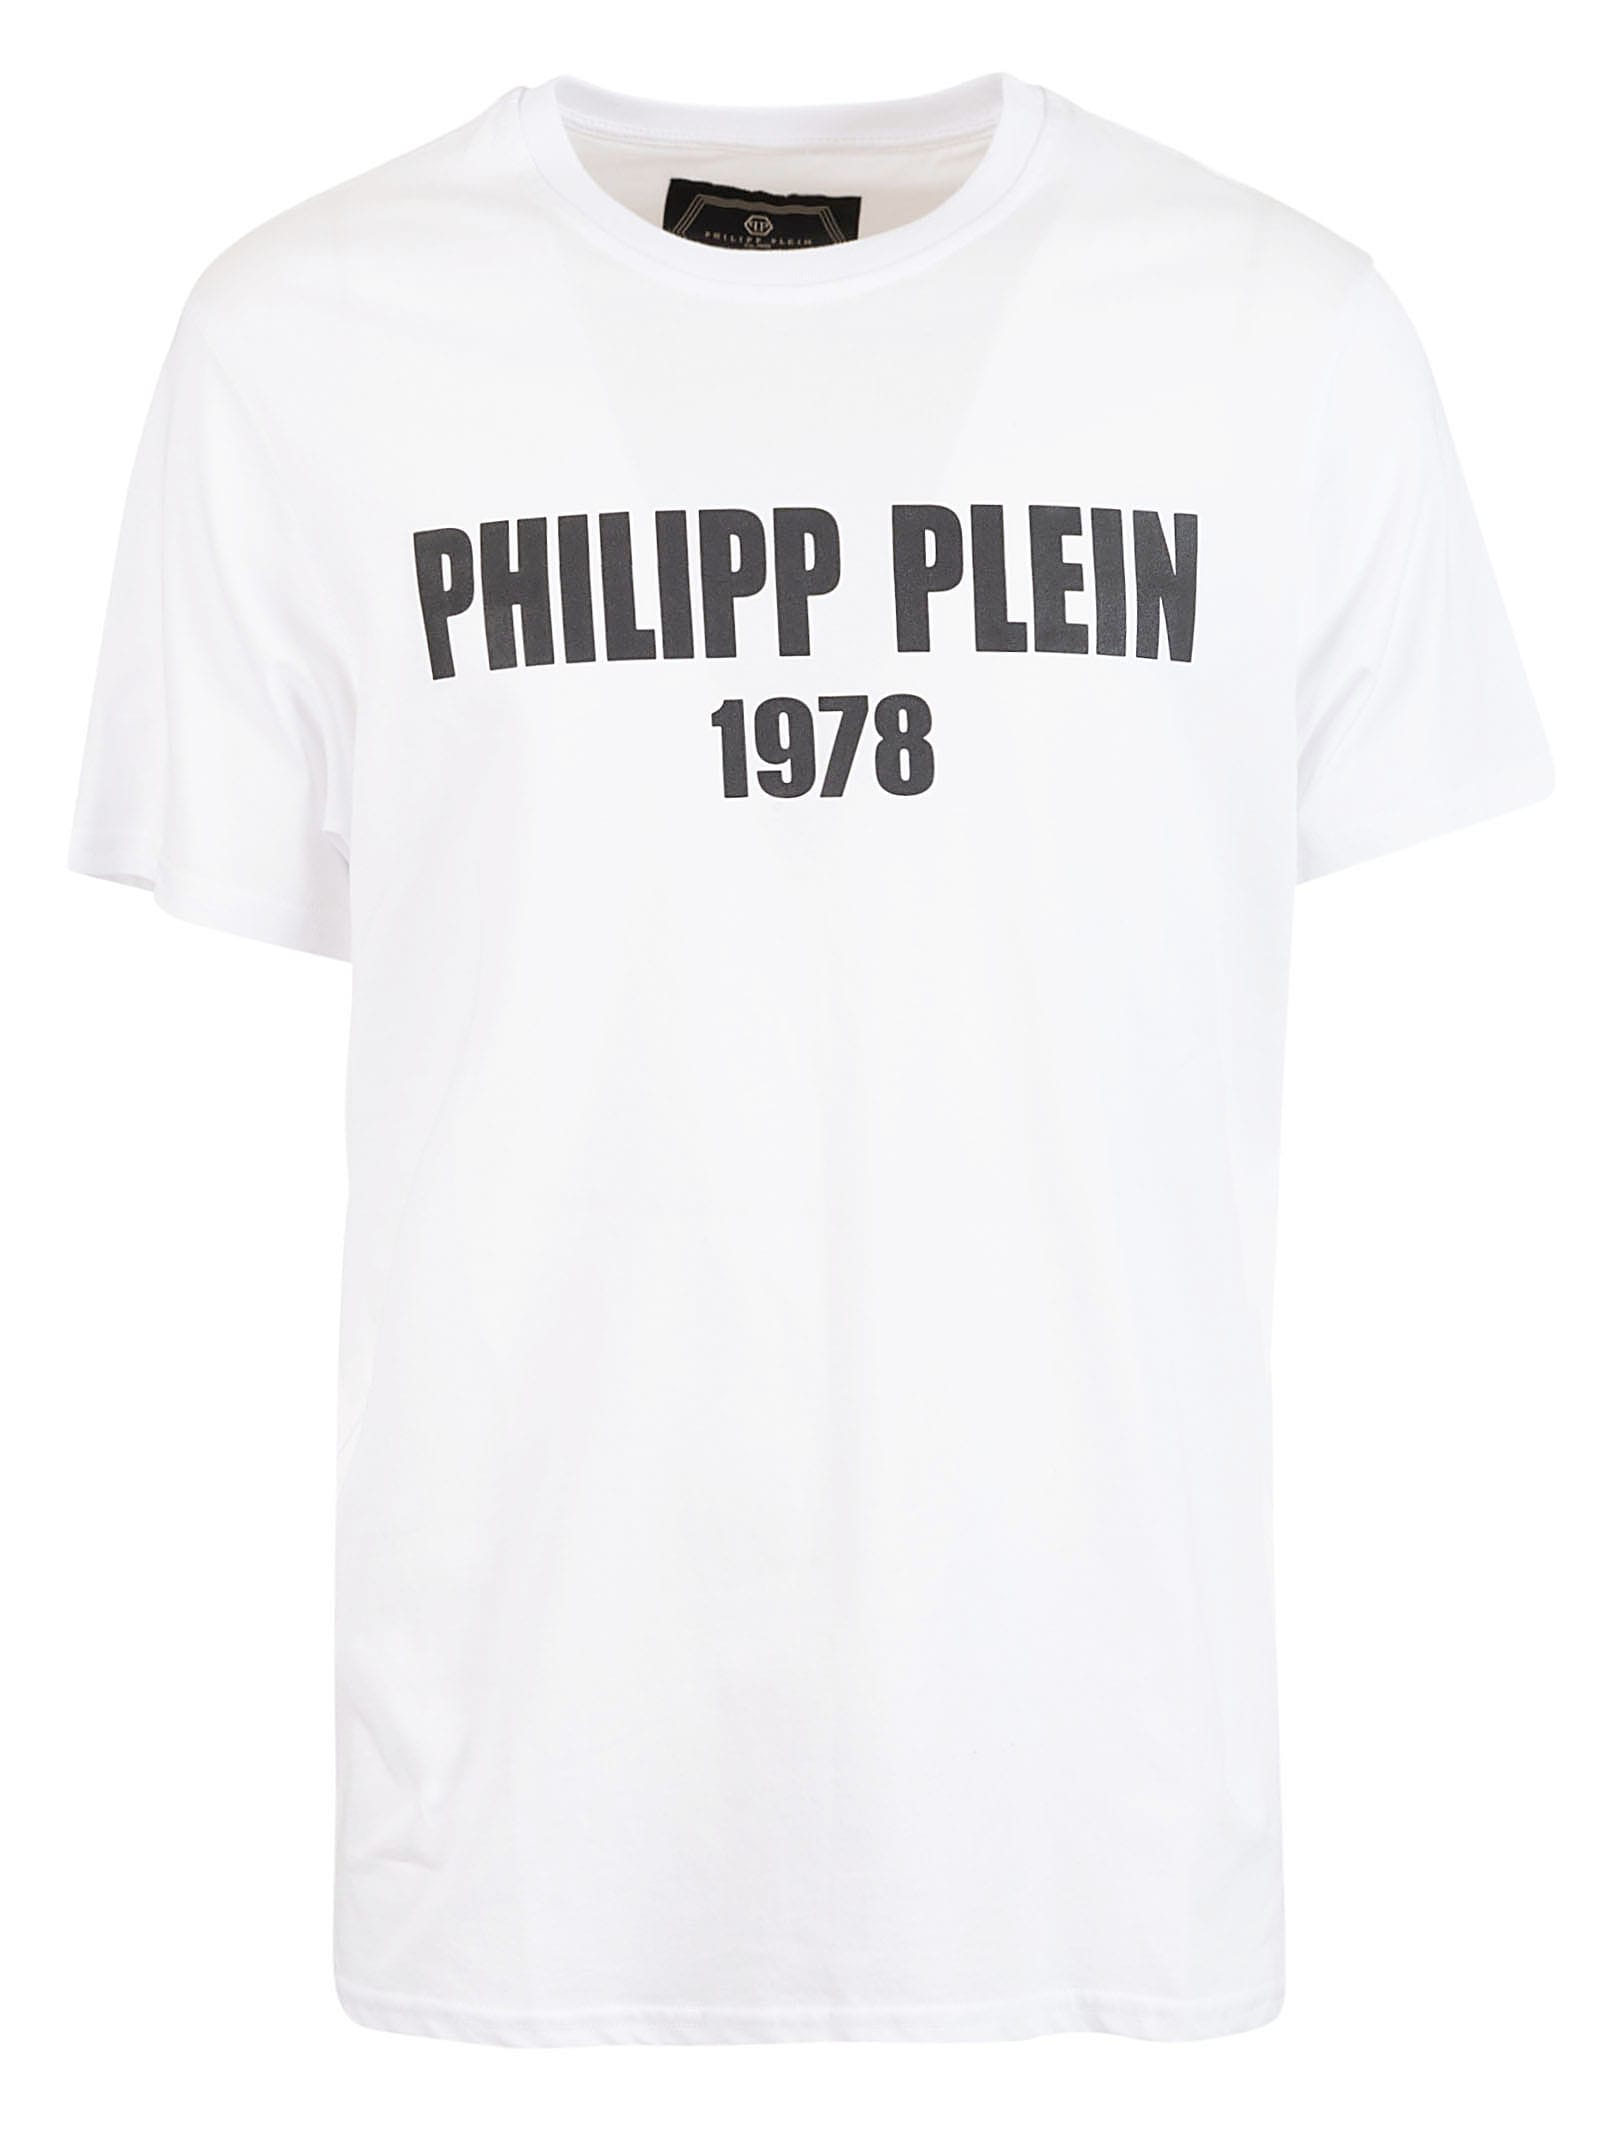 philipp plein t shirt white